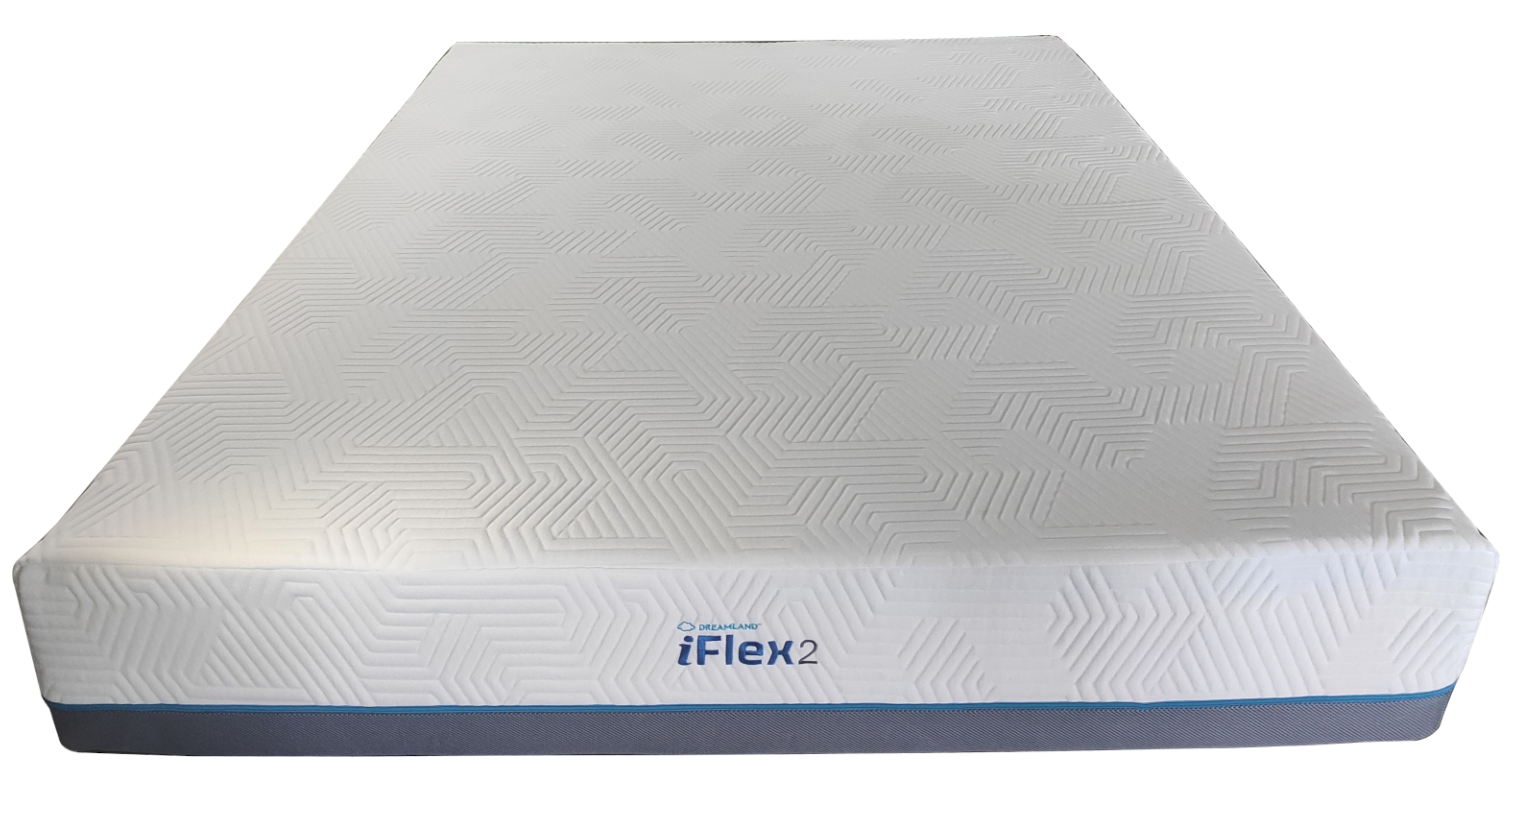 iFlex2-1536x1154